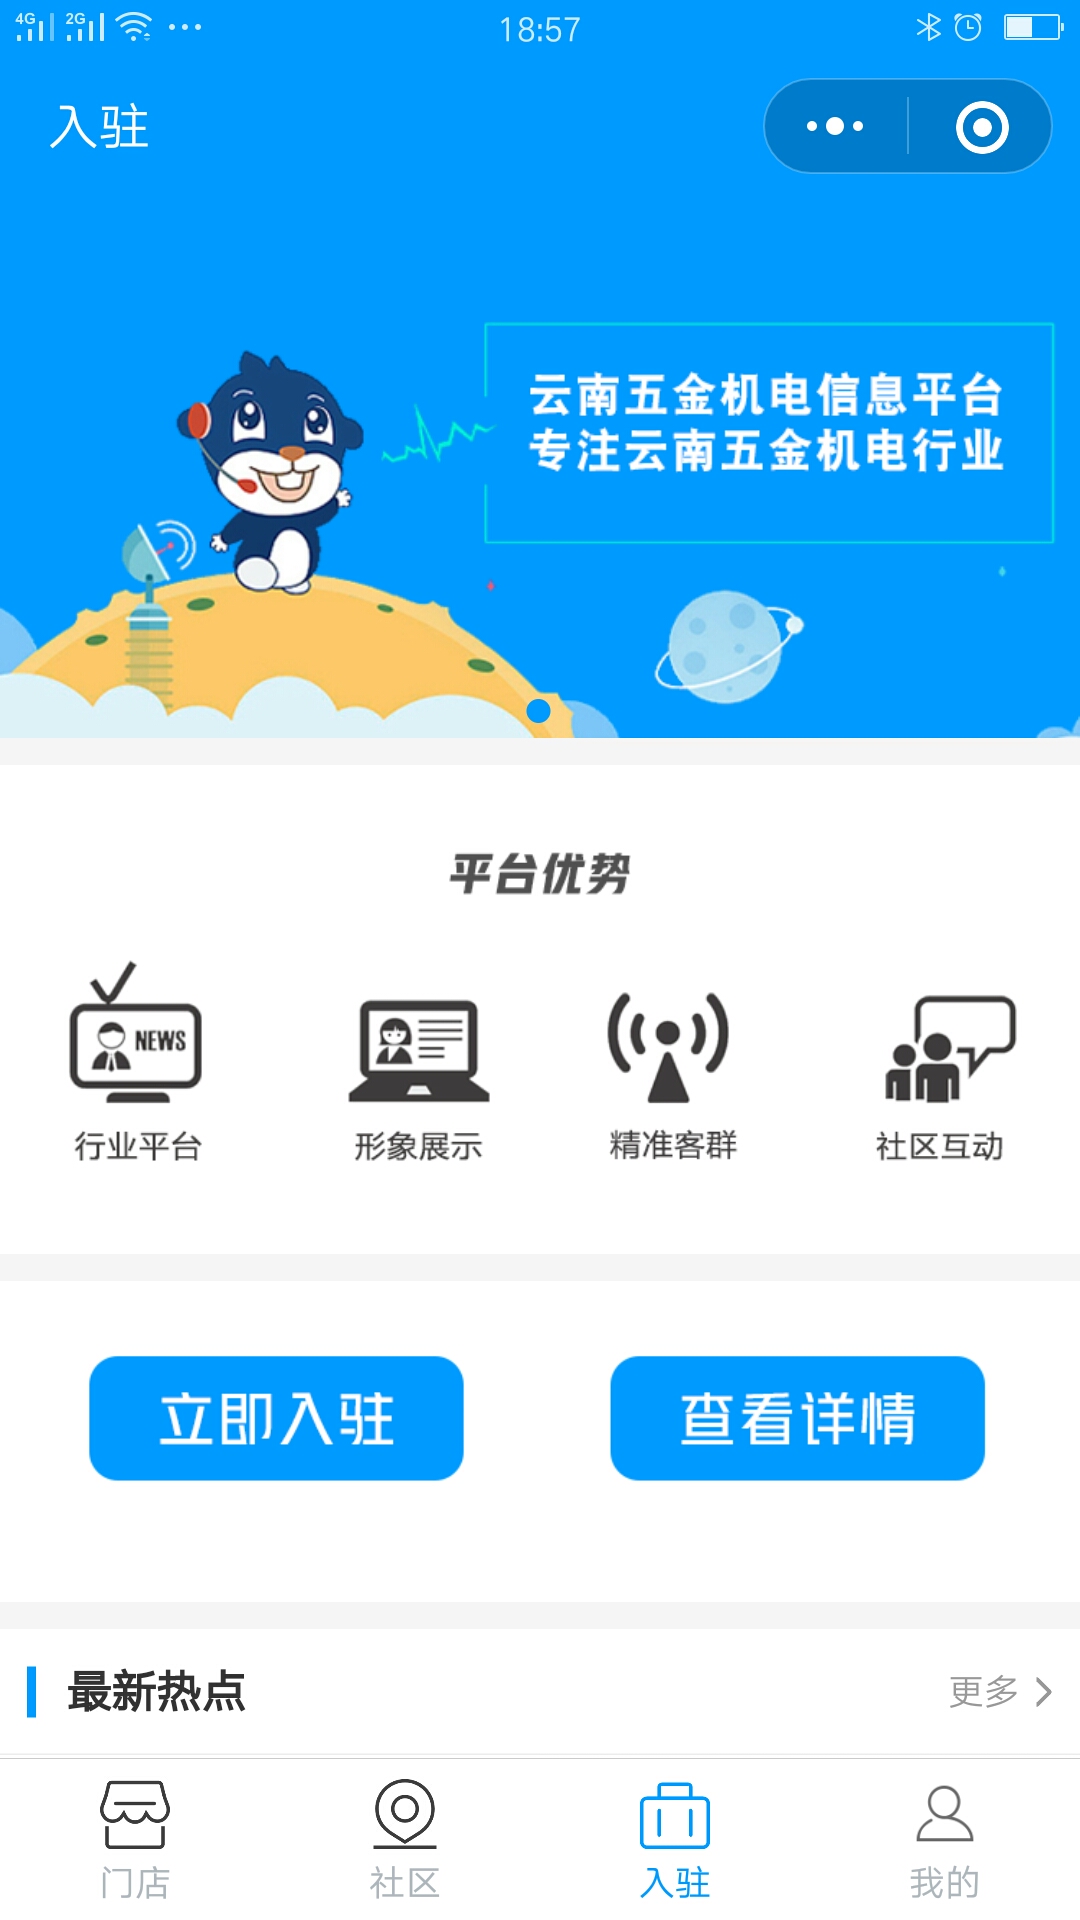 云南五金机电信息平台